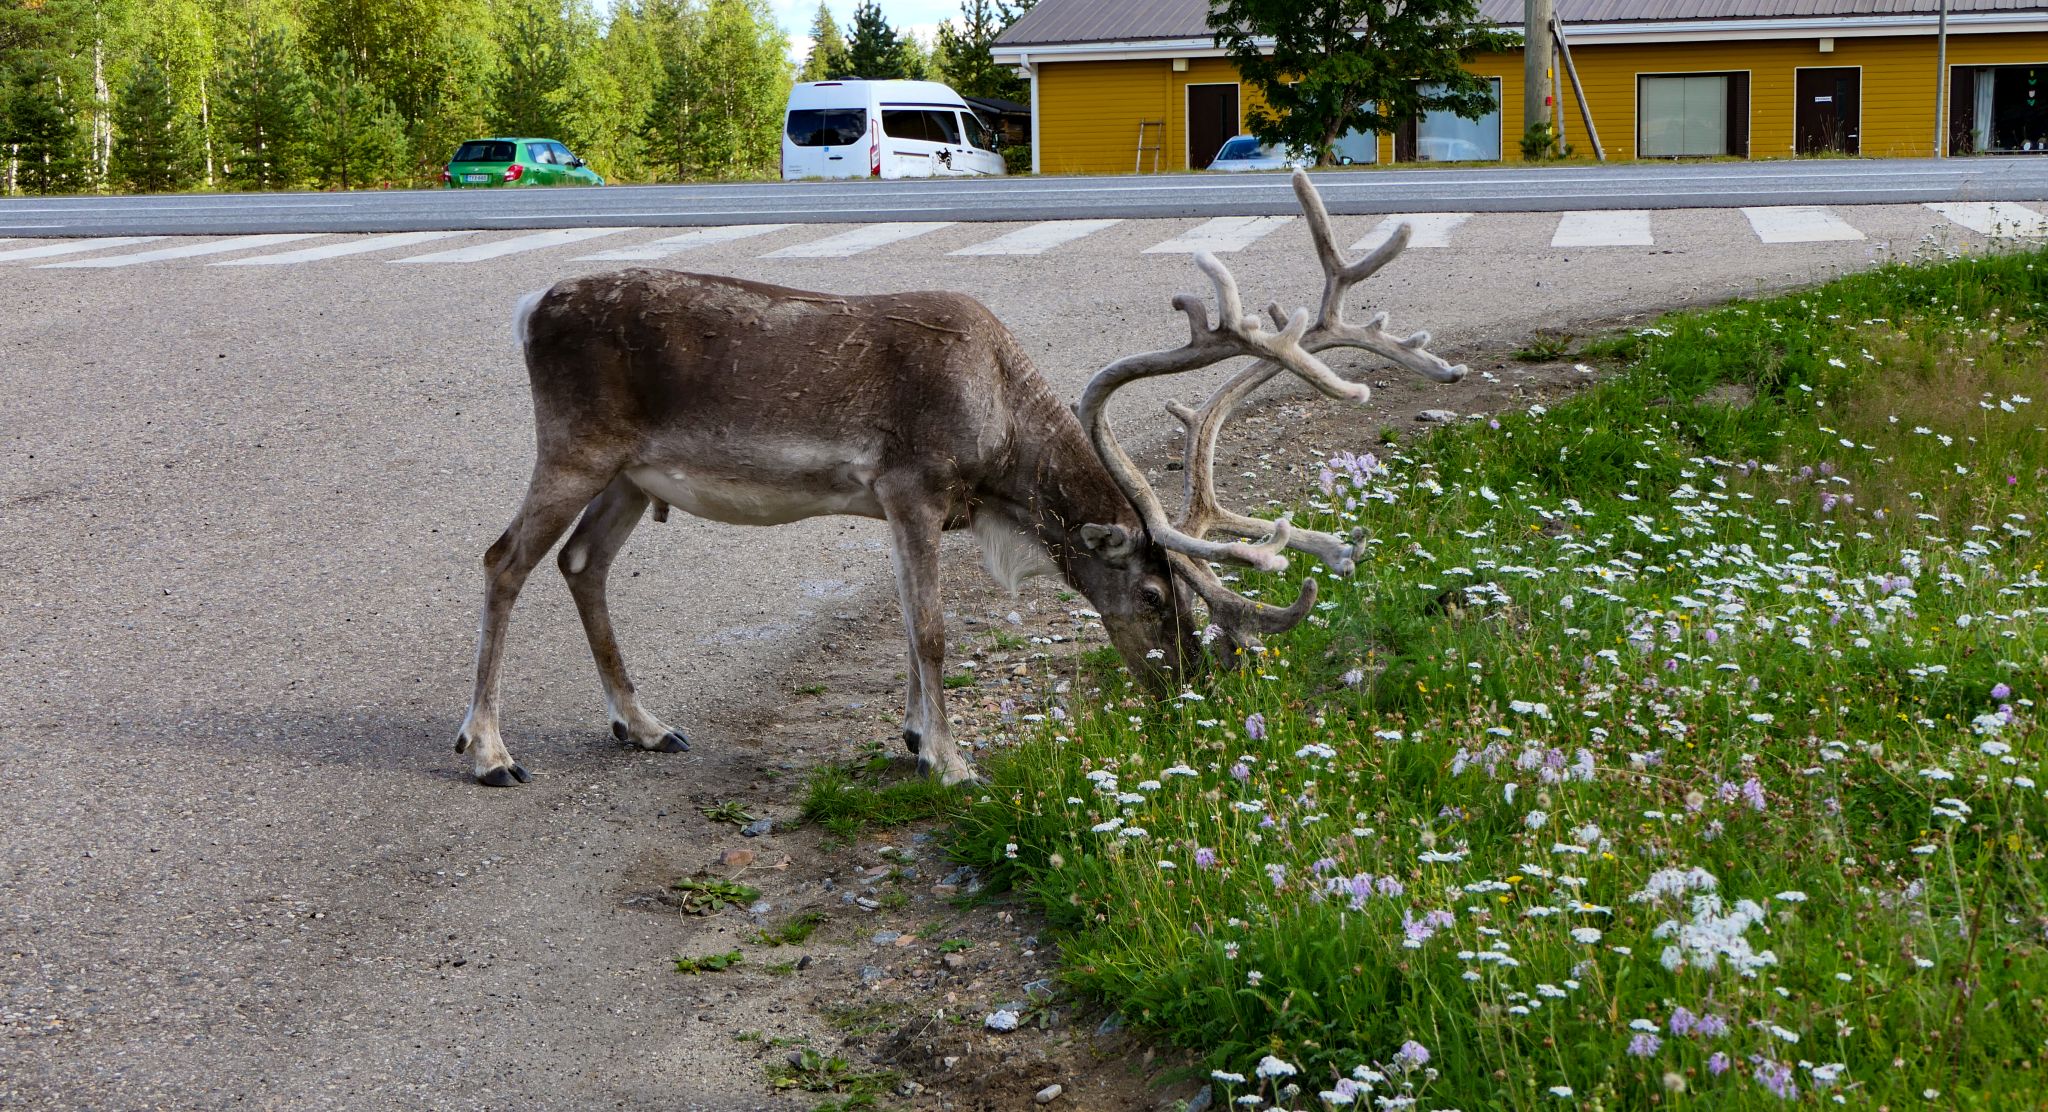 Rentiere in Finnland haben sich an die Menschen gewöhnt - sie stehen überall im Weg rum.